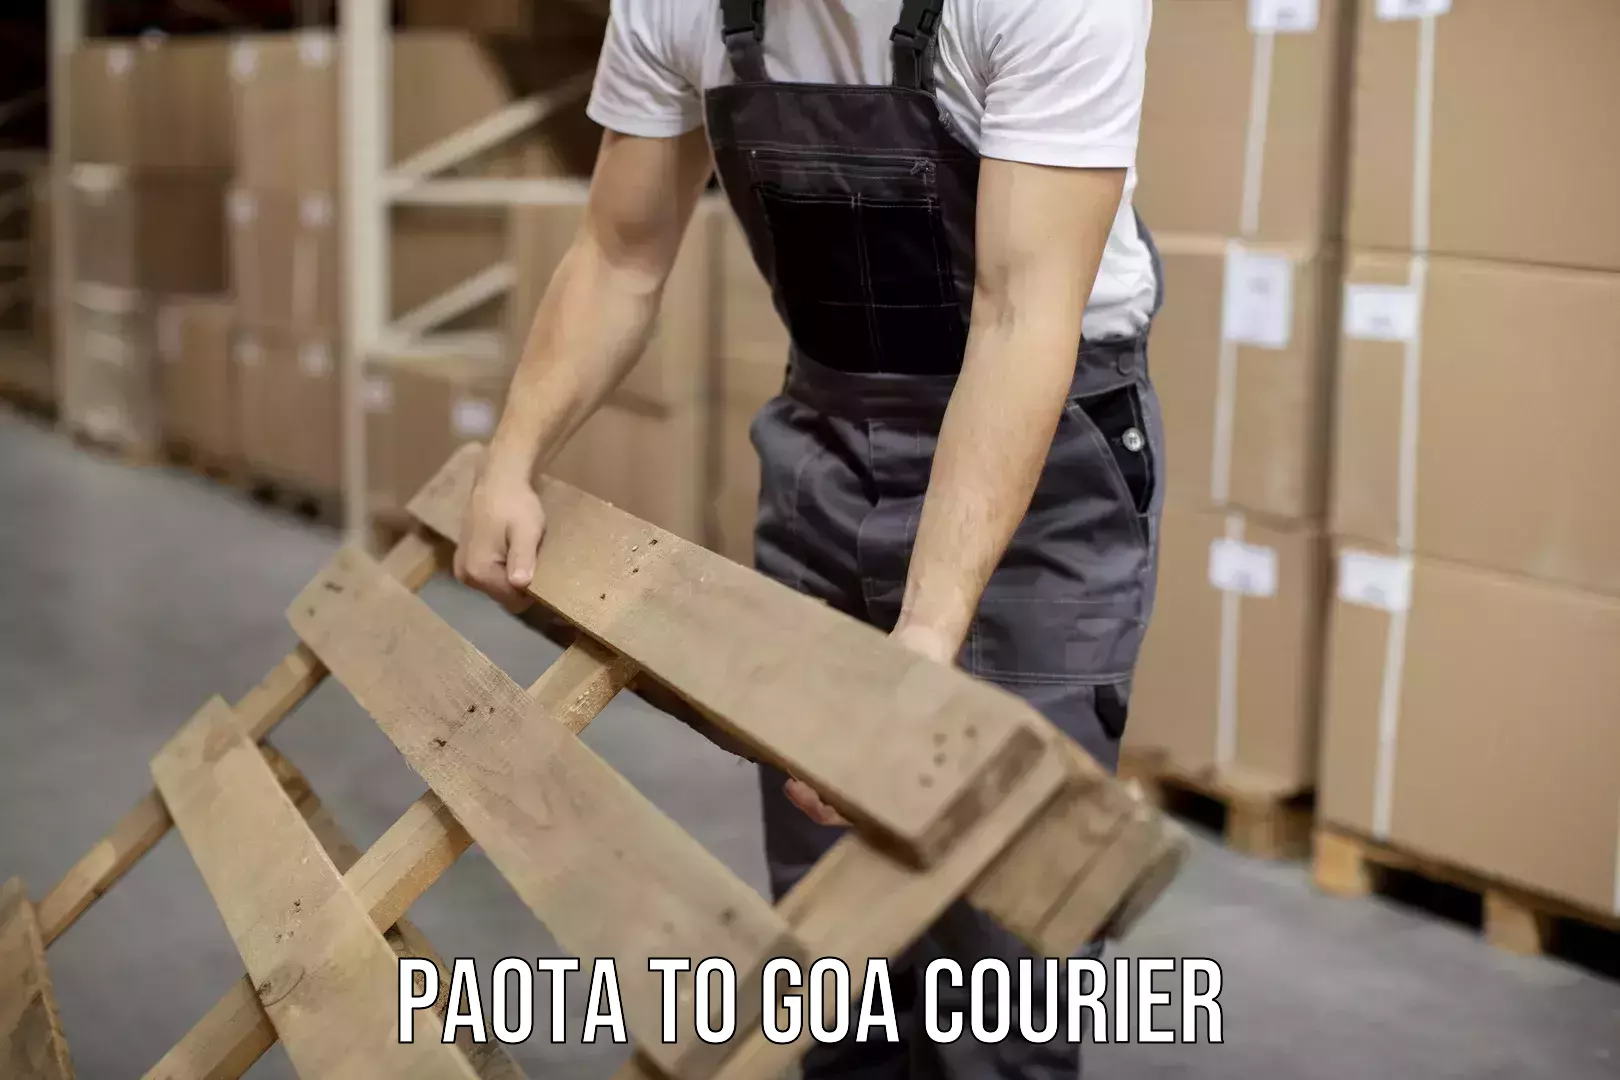 Multi-service courier options Paota to Panaji